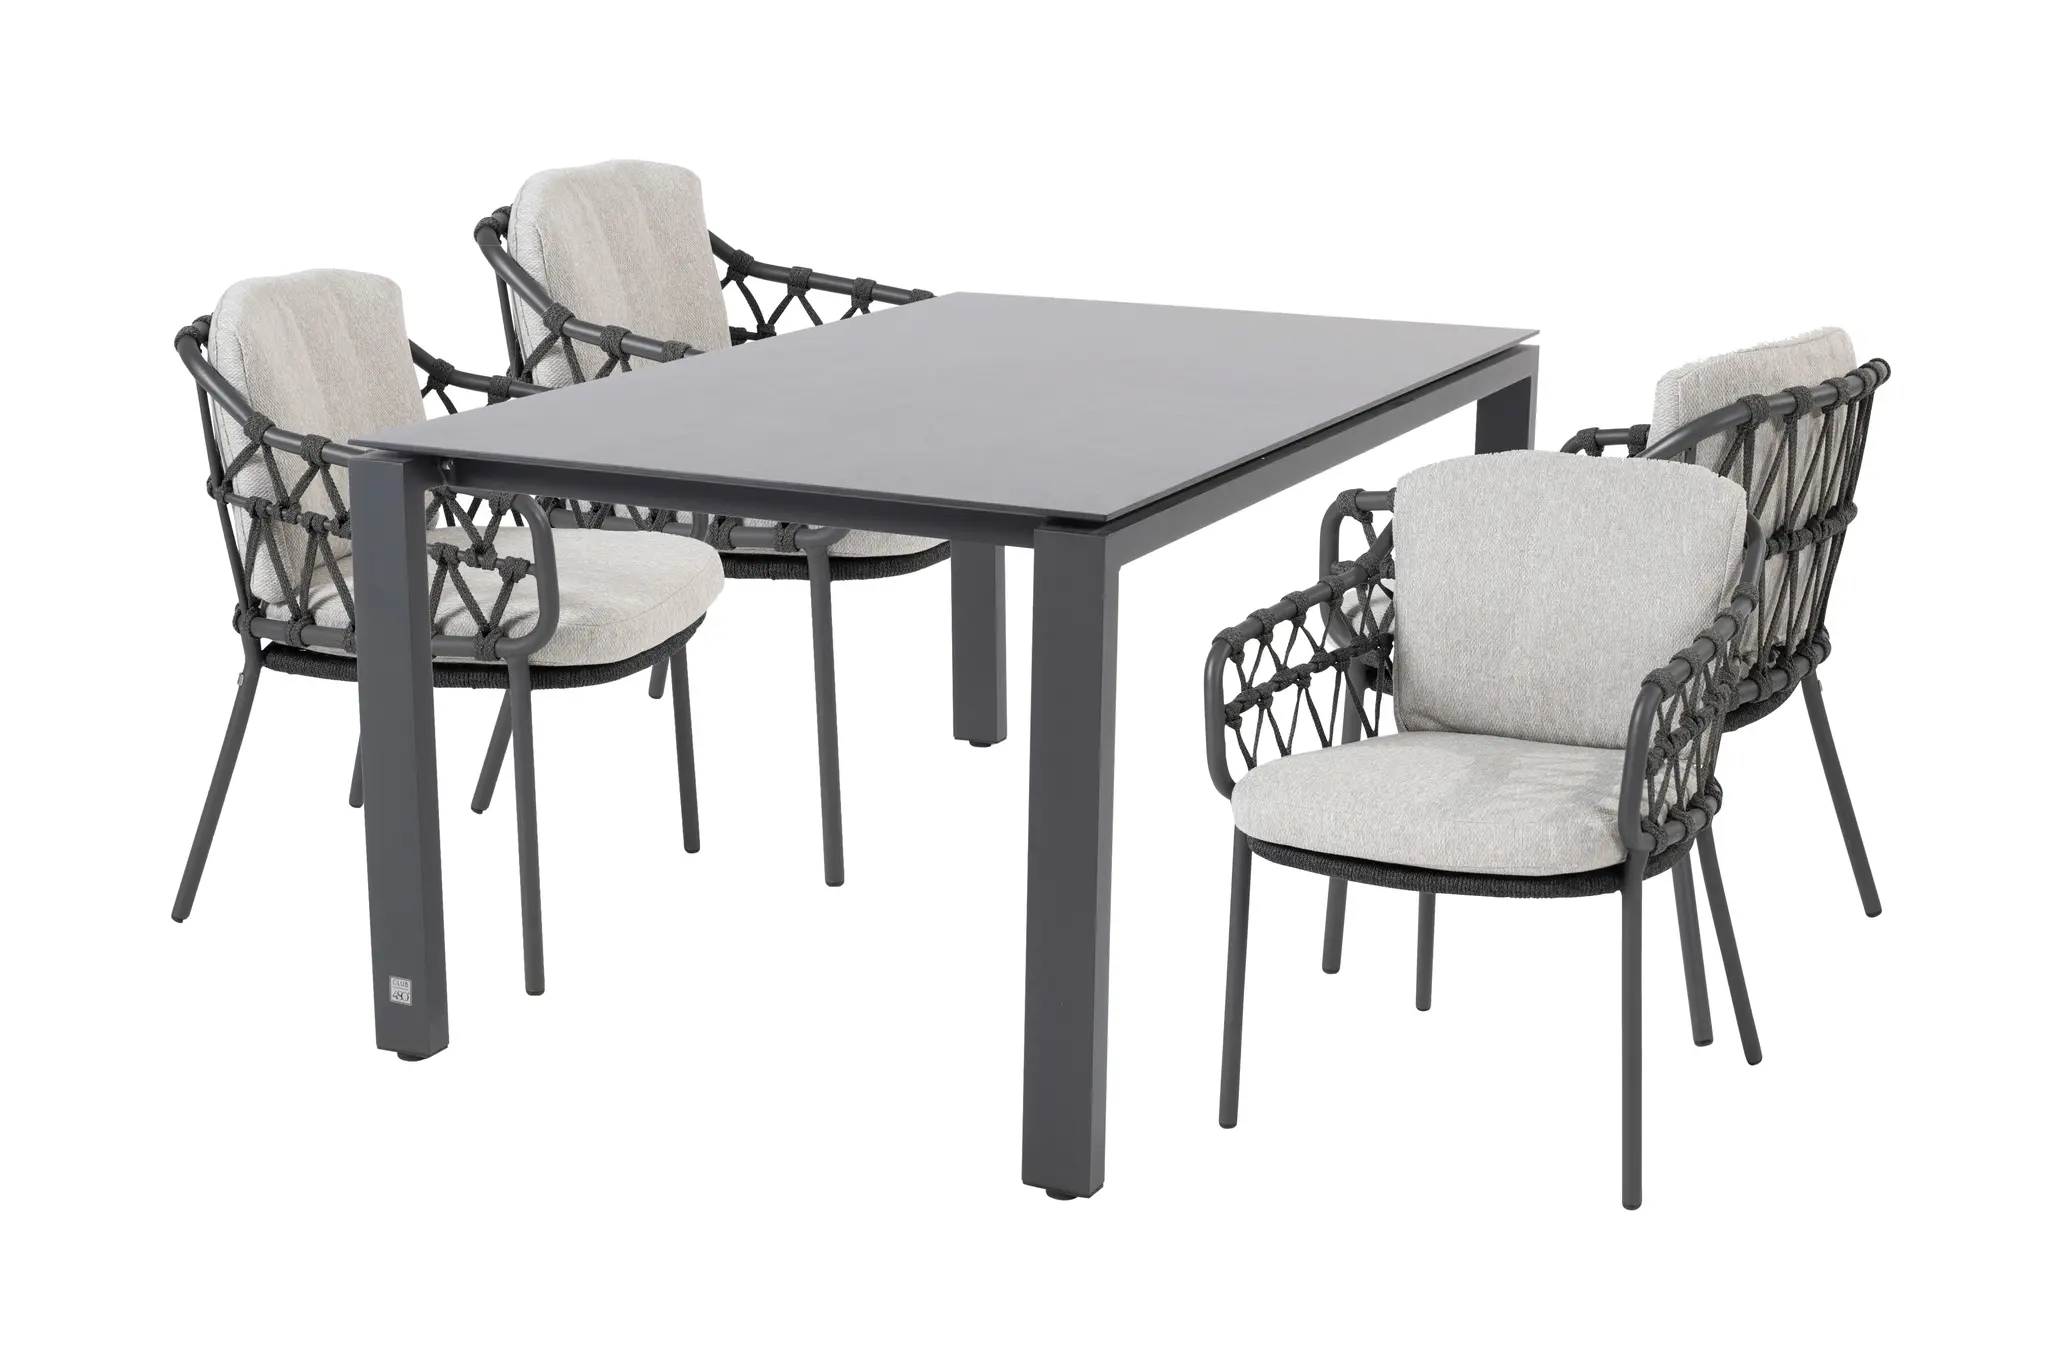 4 Seasons Outdoor Goa tafel HPL 160x95 cm met 4 Calpi stoelen